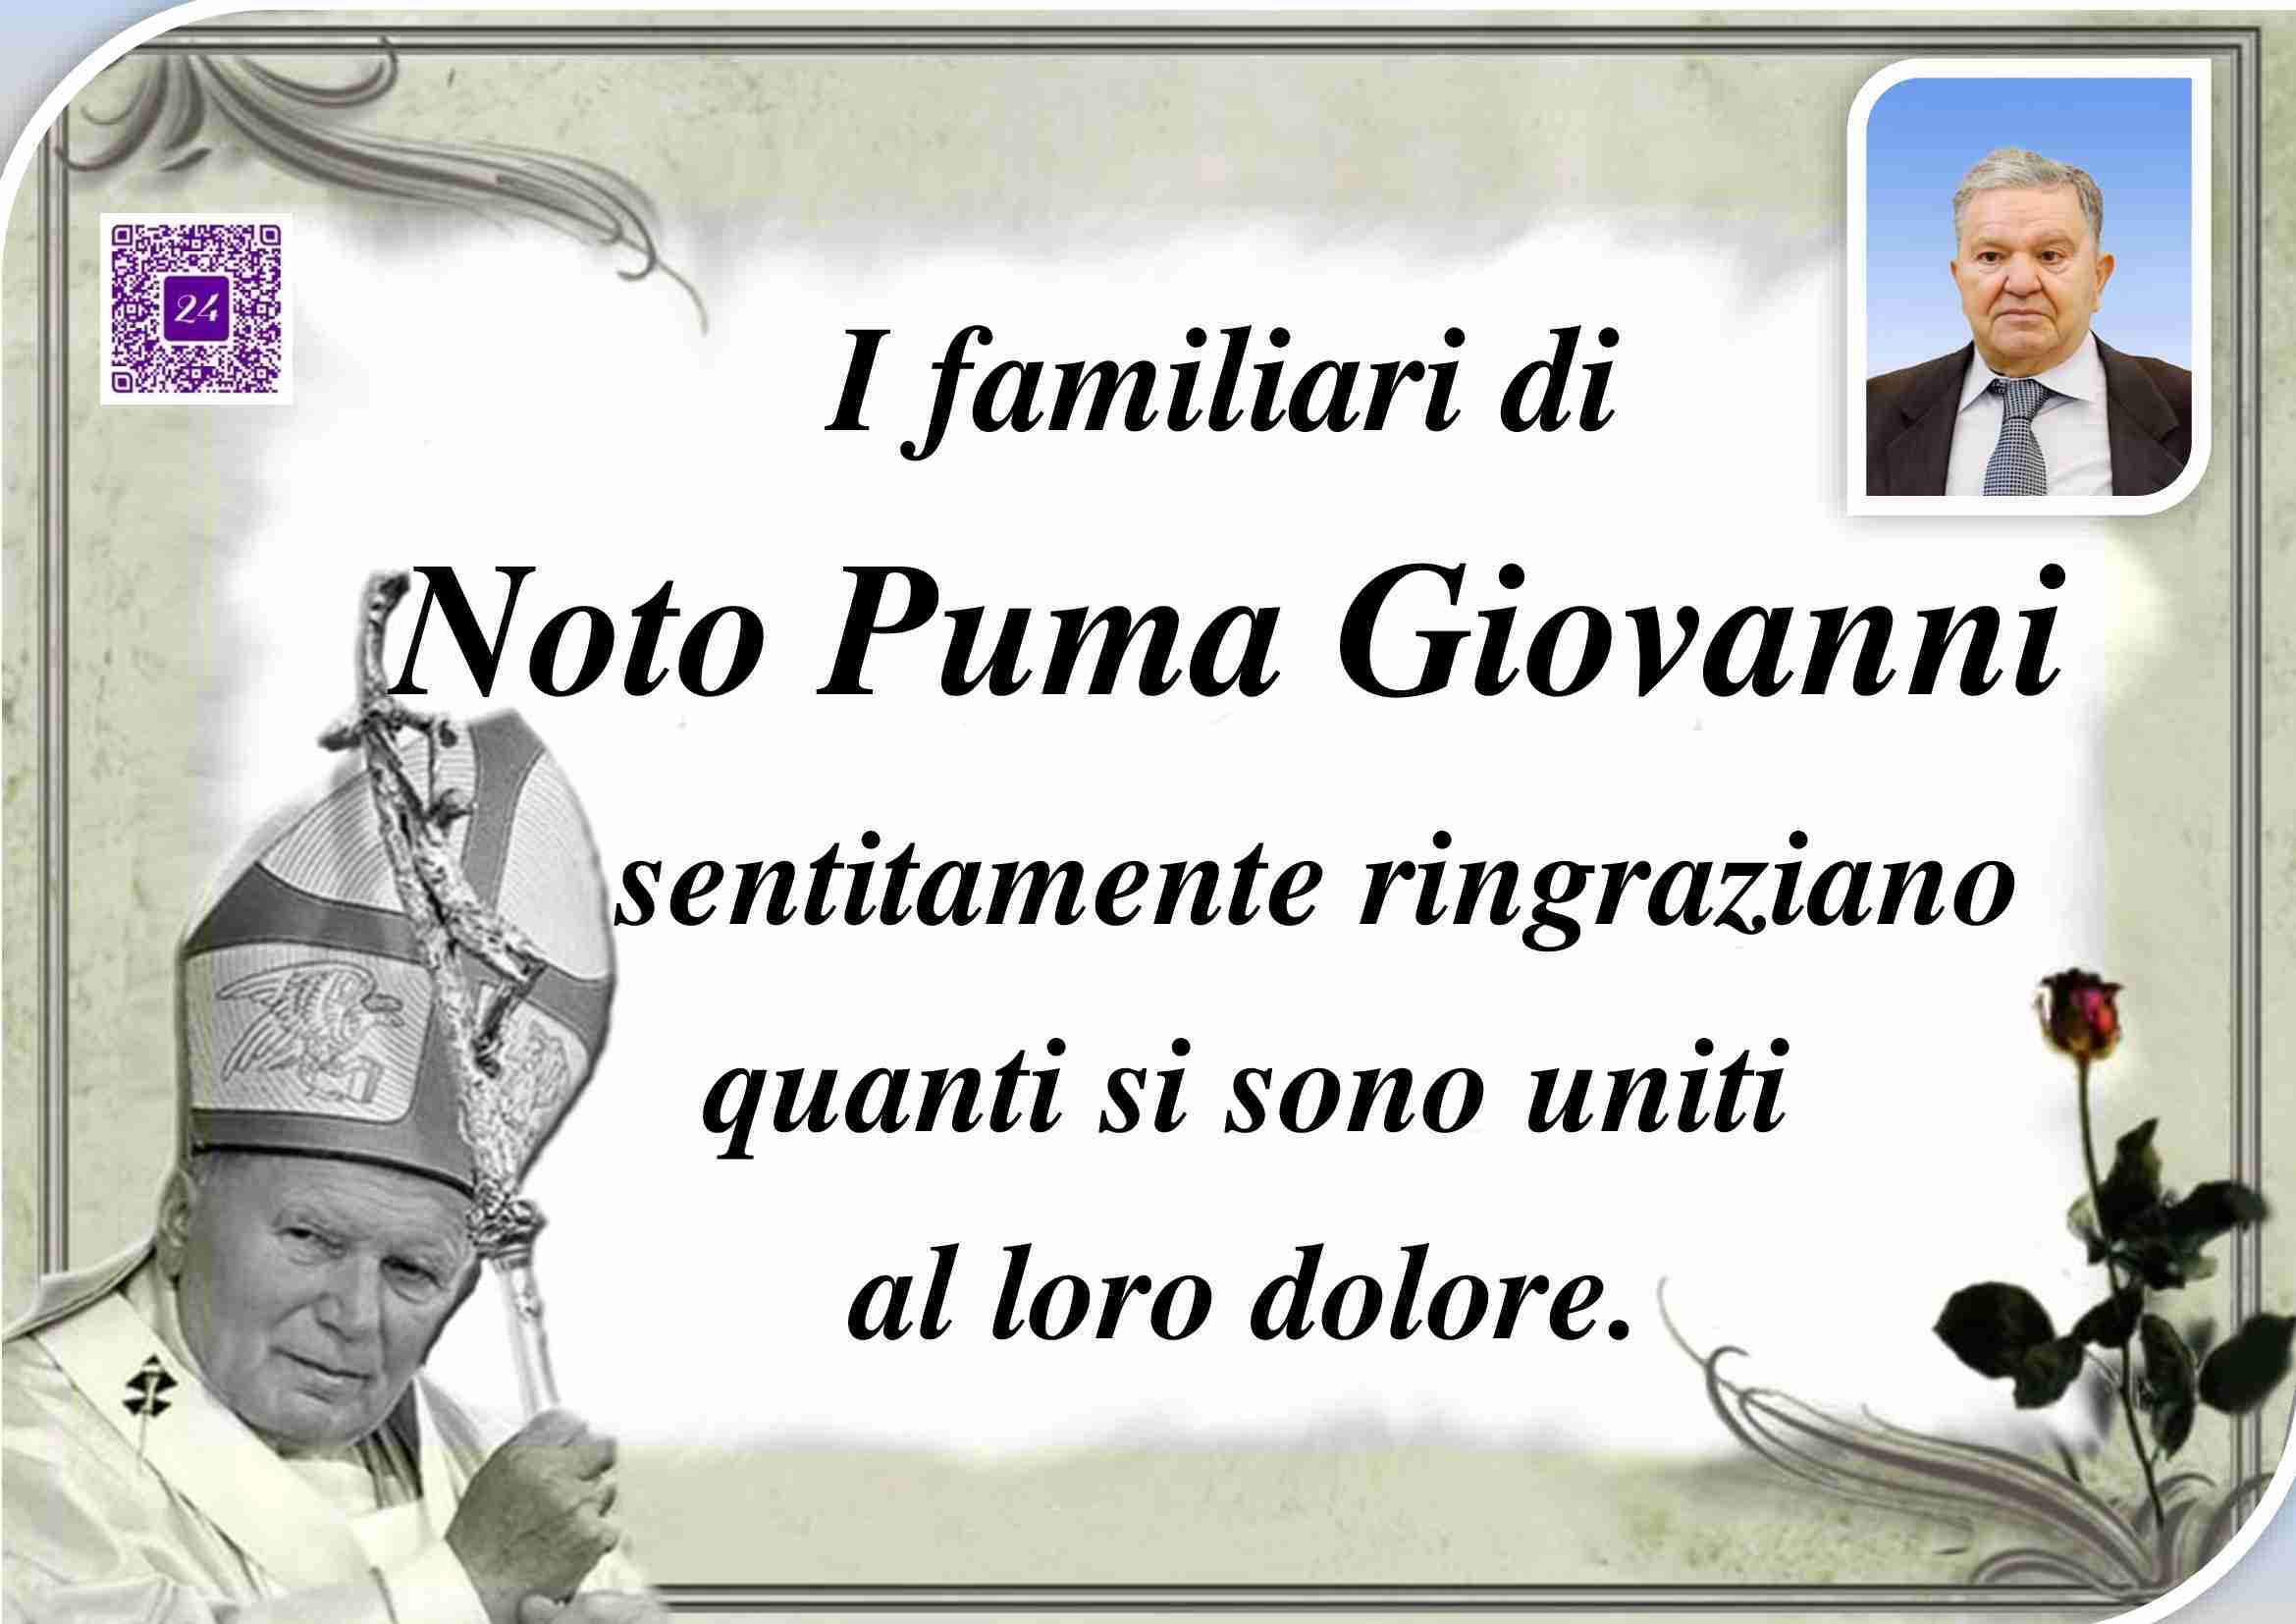 Giovanni Noto Puma